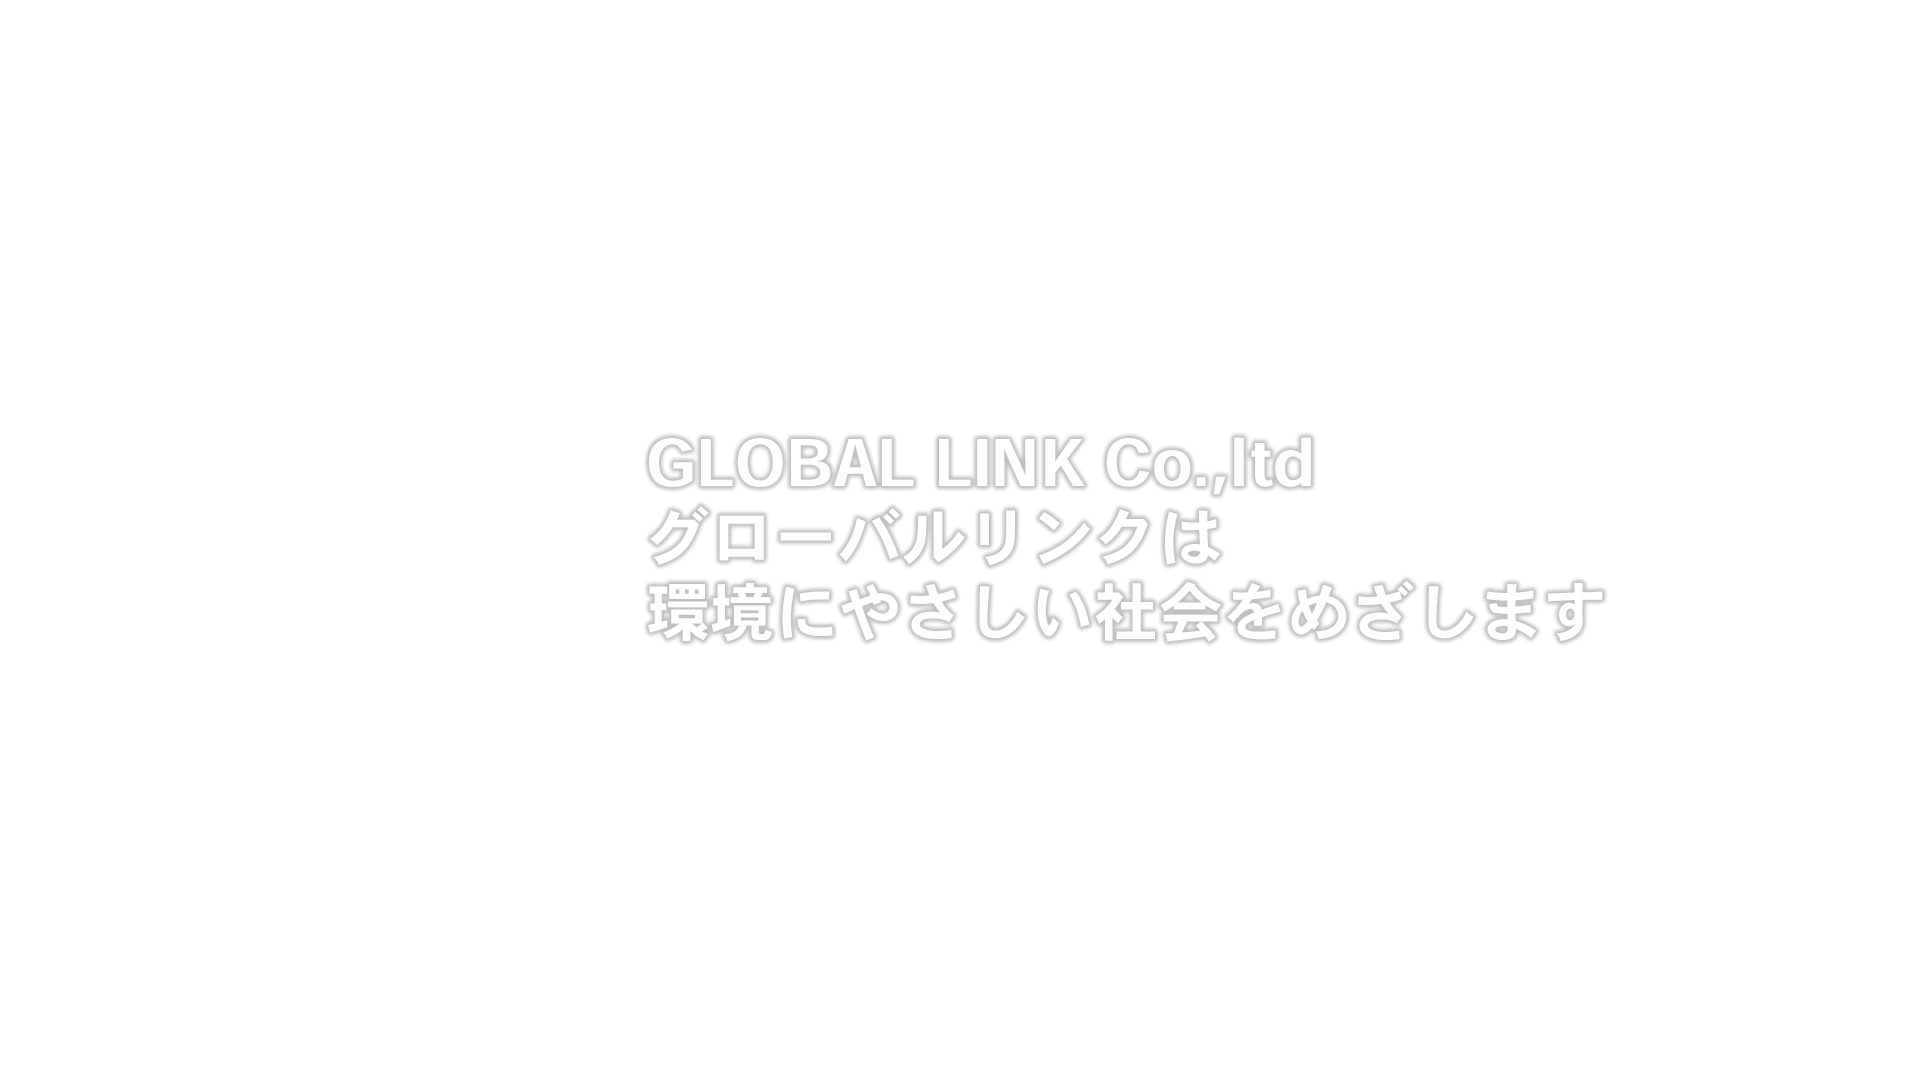 GLOBAL LINK Co.,ltd グローバルリンクは 環境にやさしい社会をめざします